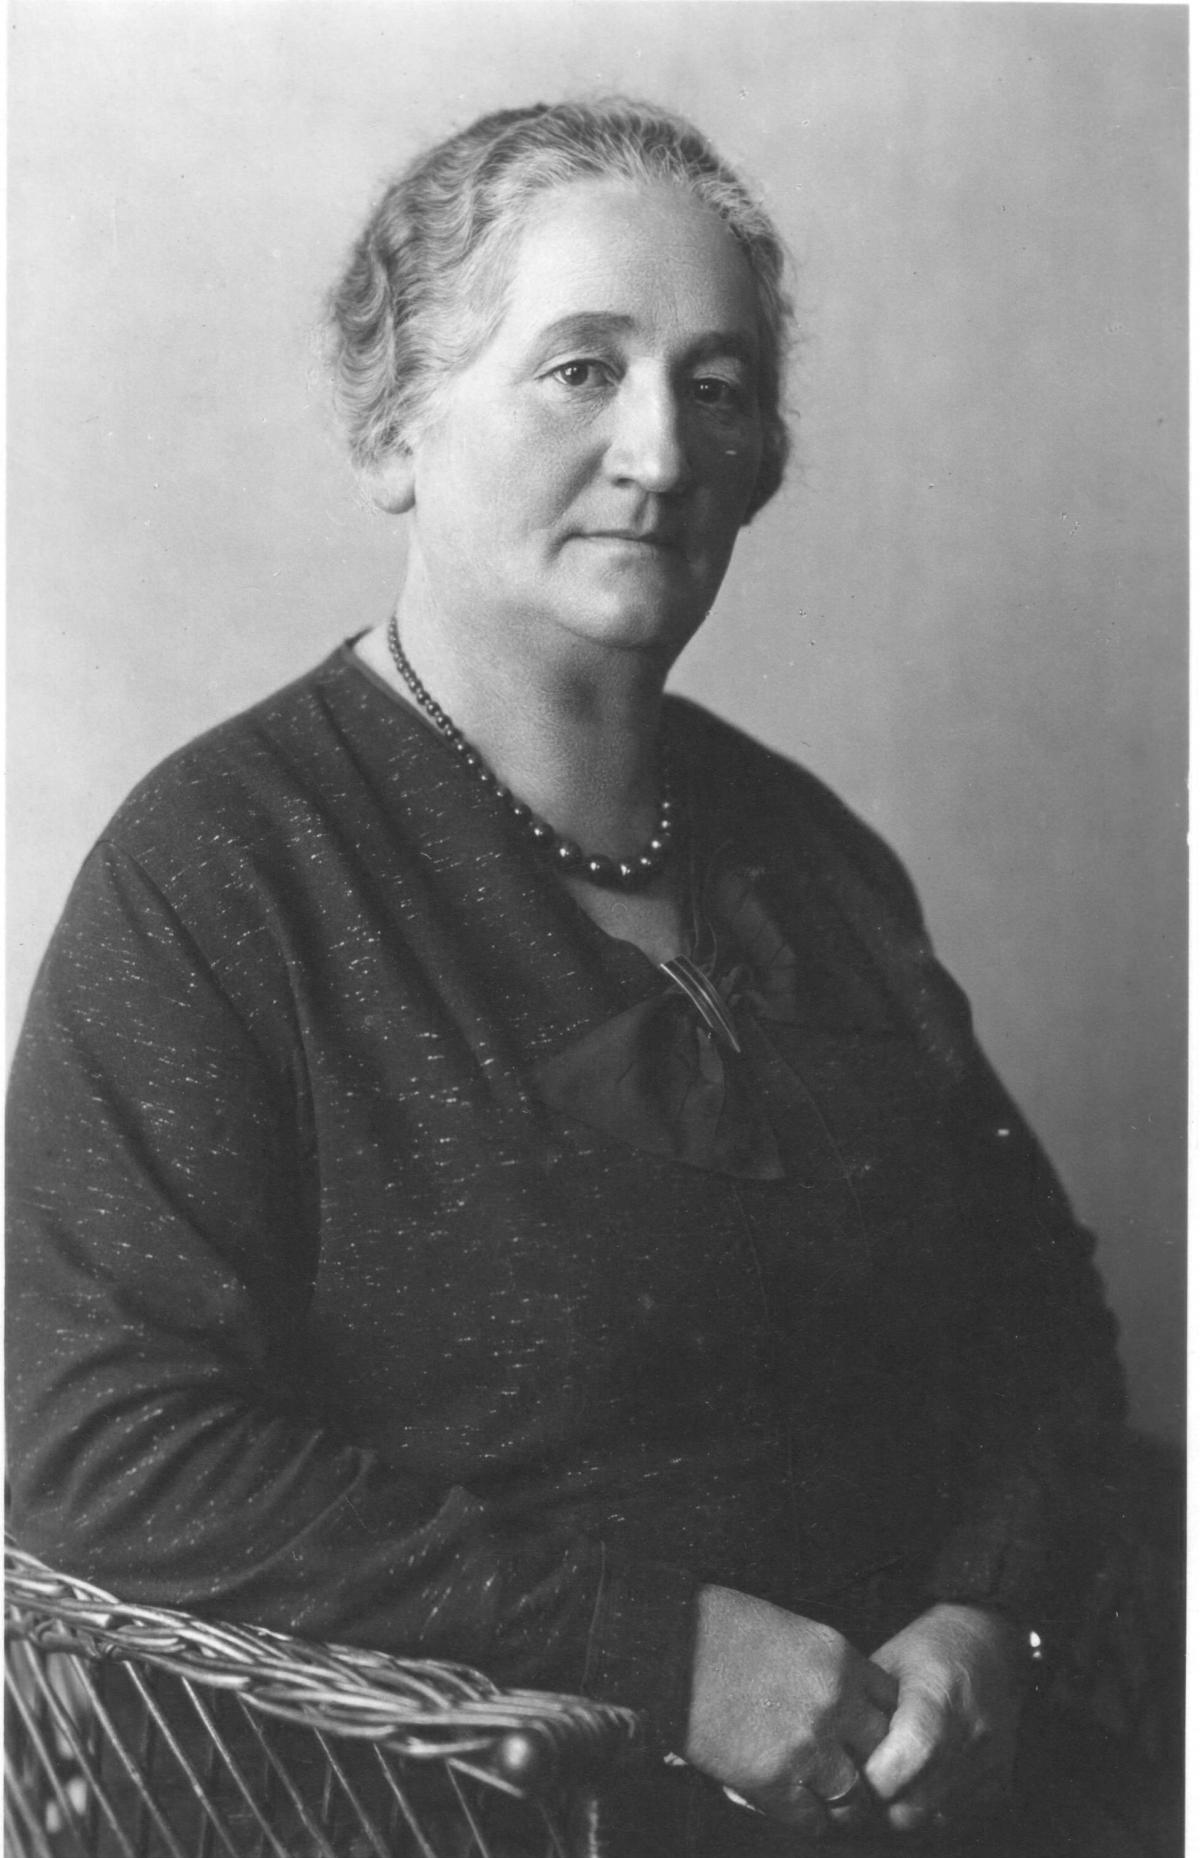 Schwarzweiss Portraitfoto von Katharina Graf, 1919 oder 1930